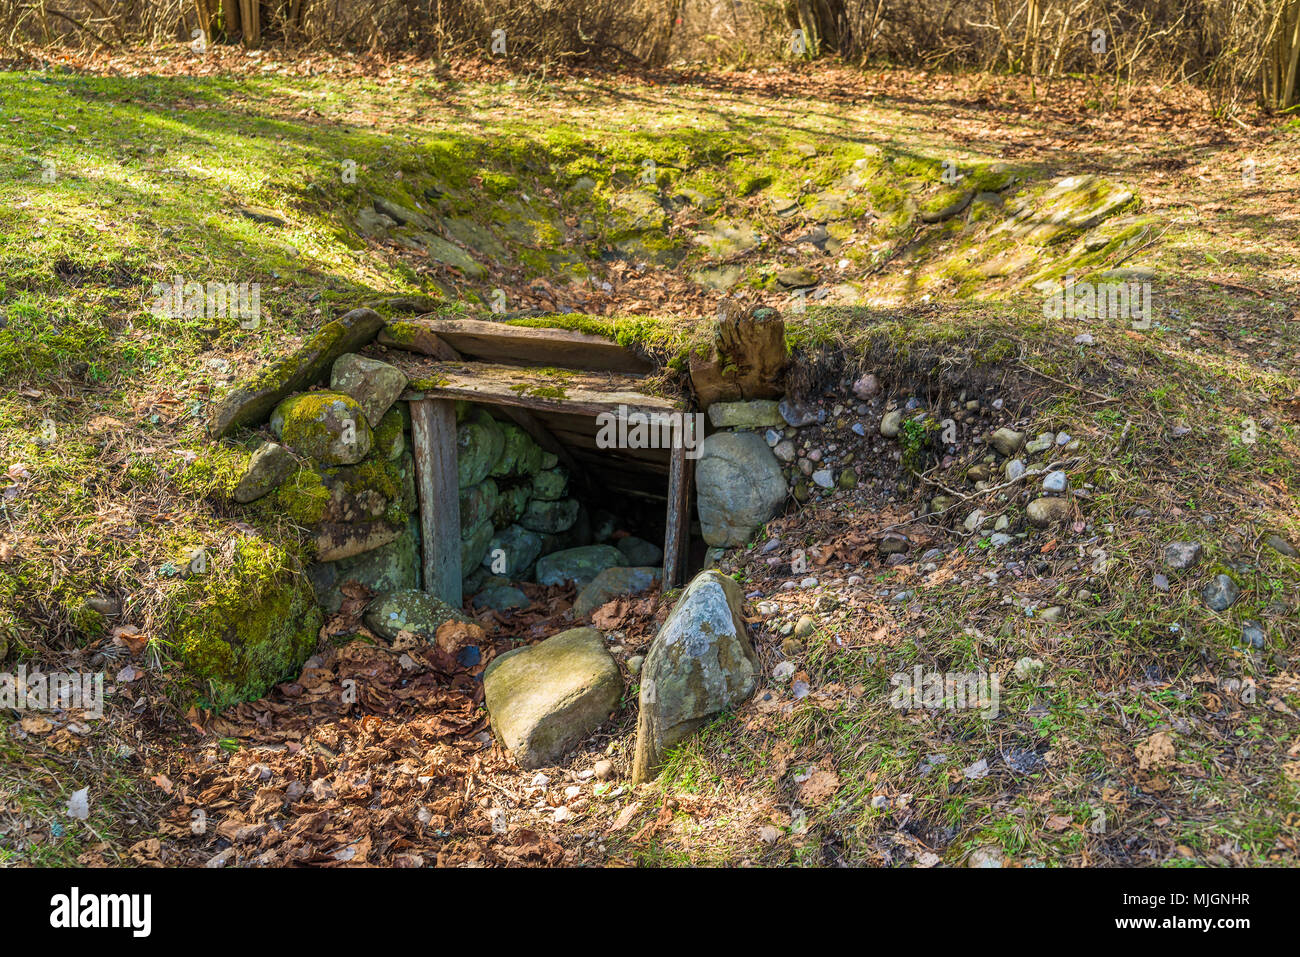 Trollskogen Naturschutzgebiet auf Oland, Schweden. Eine alte Tar Pit-Funktion zur Herstellung von Teer aus Harzreiche Kiefer stumpf Kernholz. Stockfoto